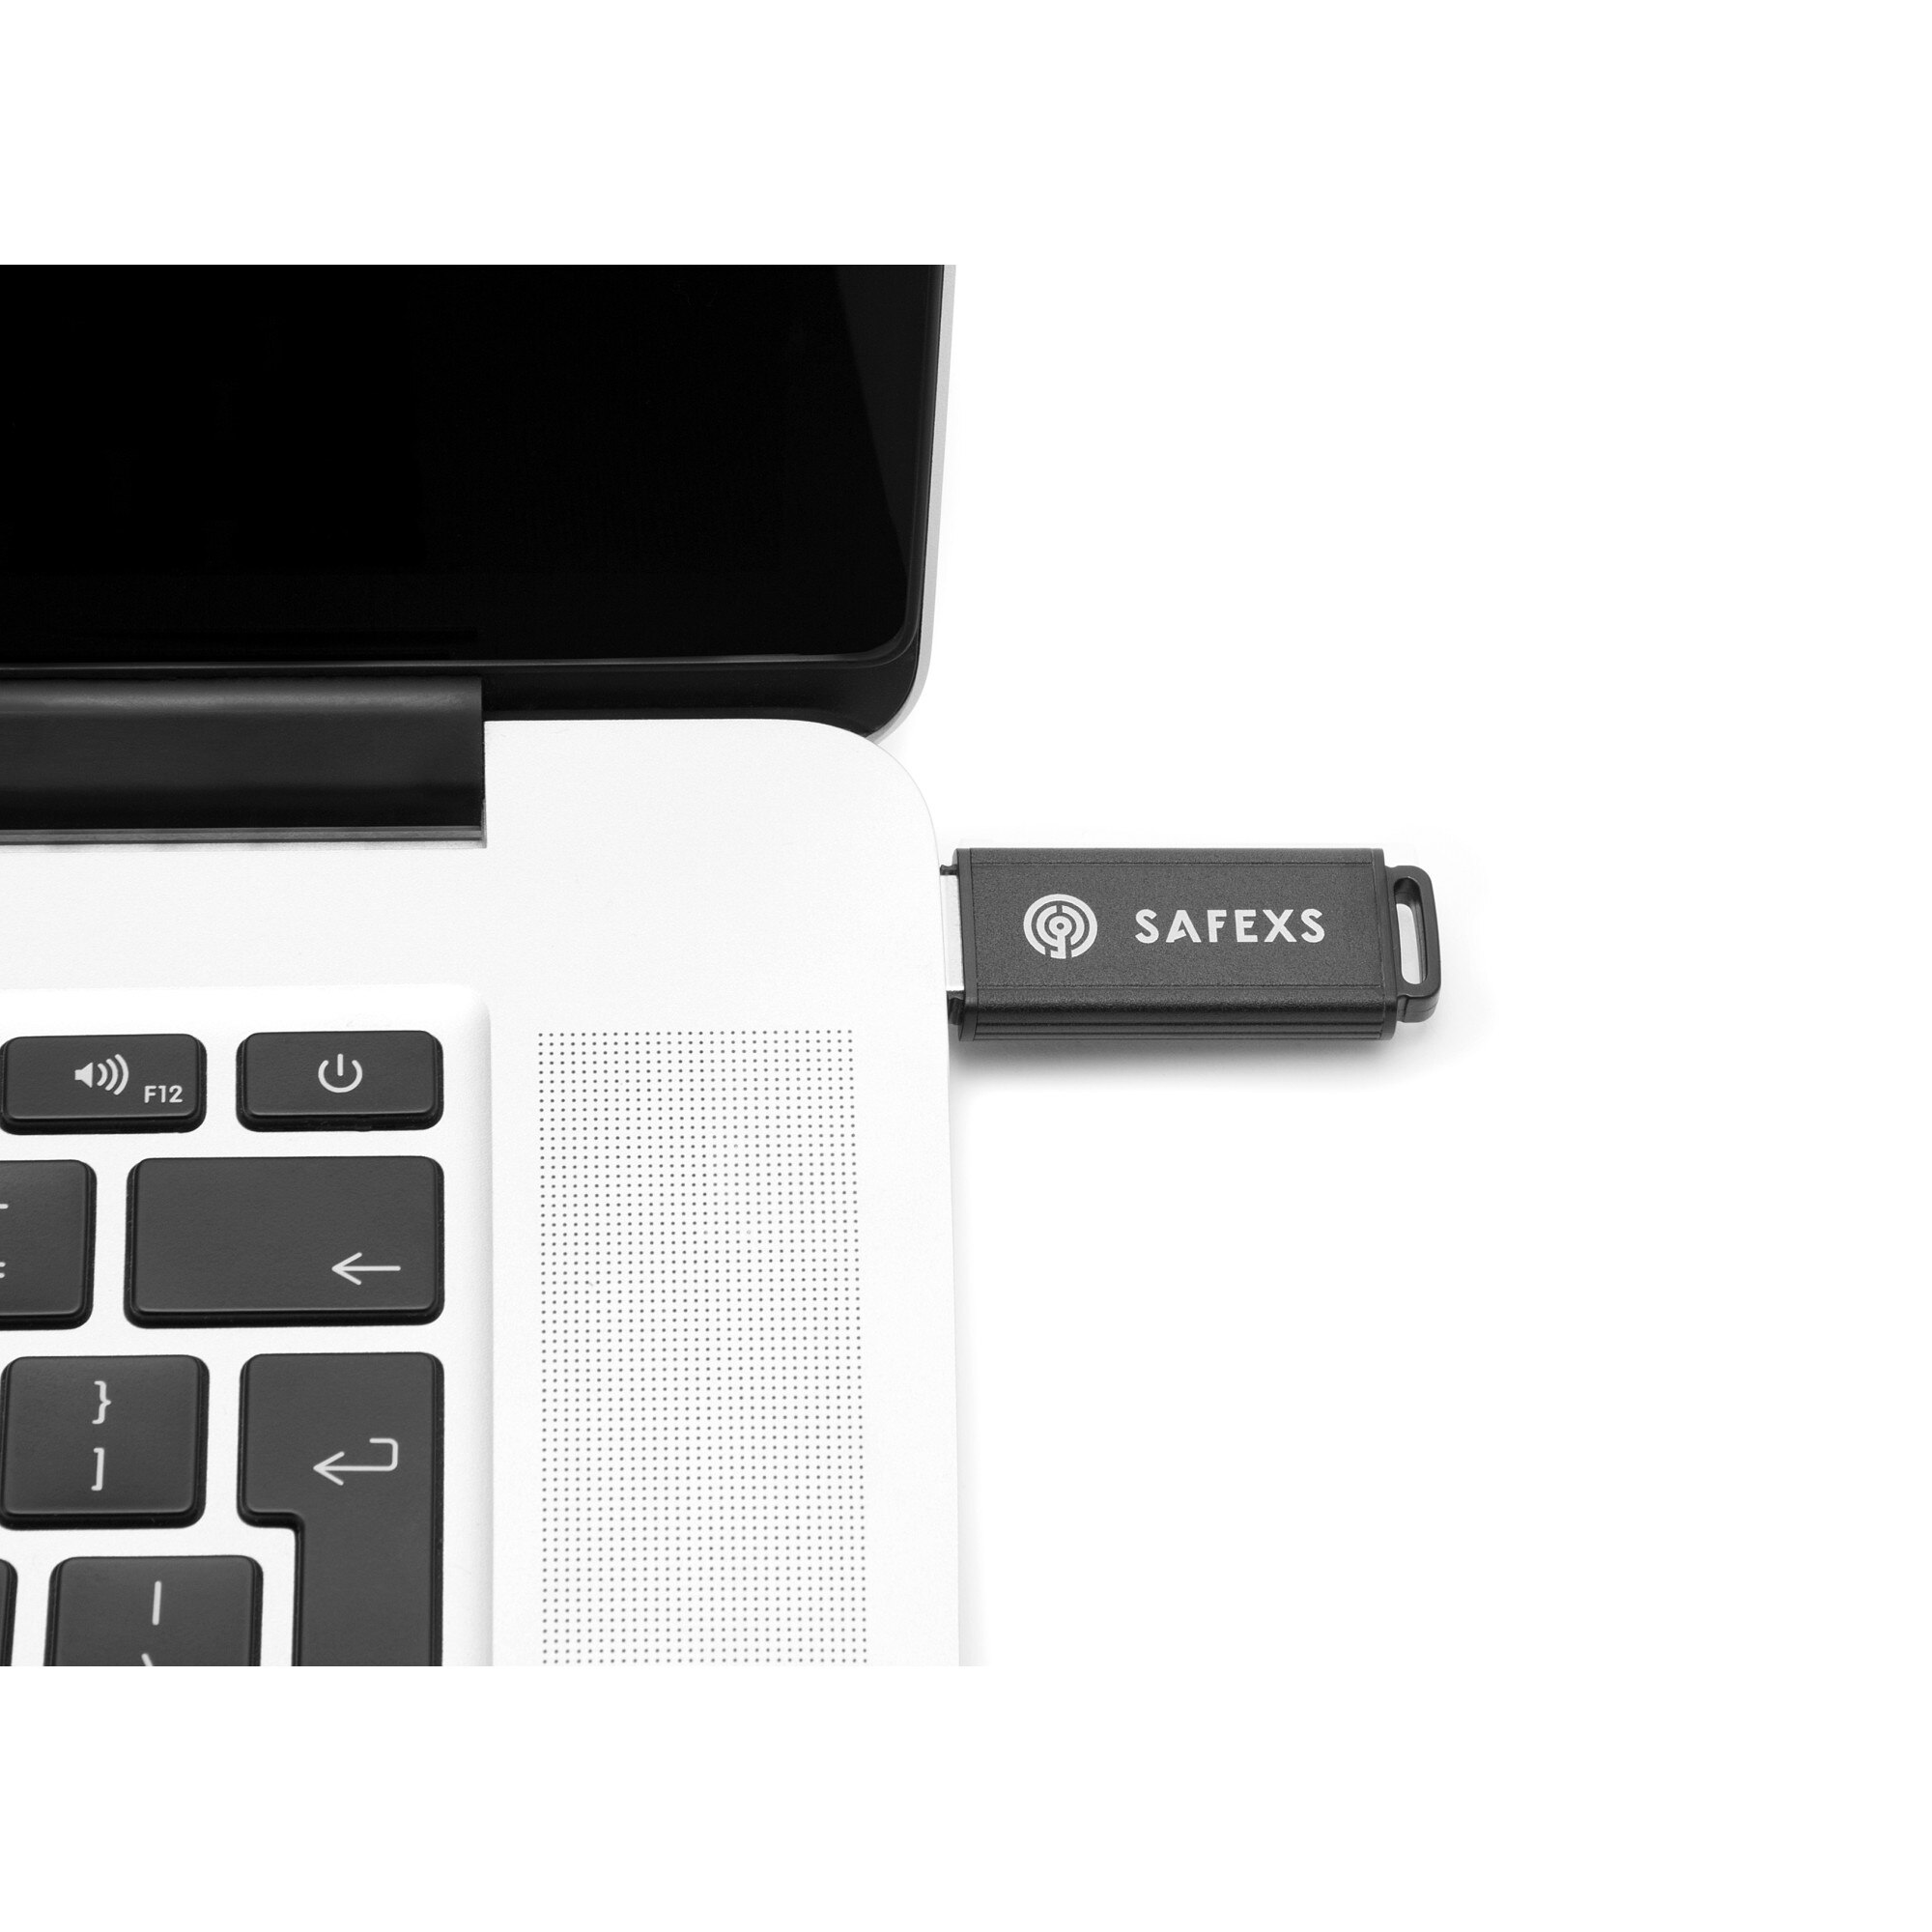 SafeXs Protector XT 16Go clé USB3 cryptée durcie